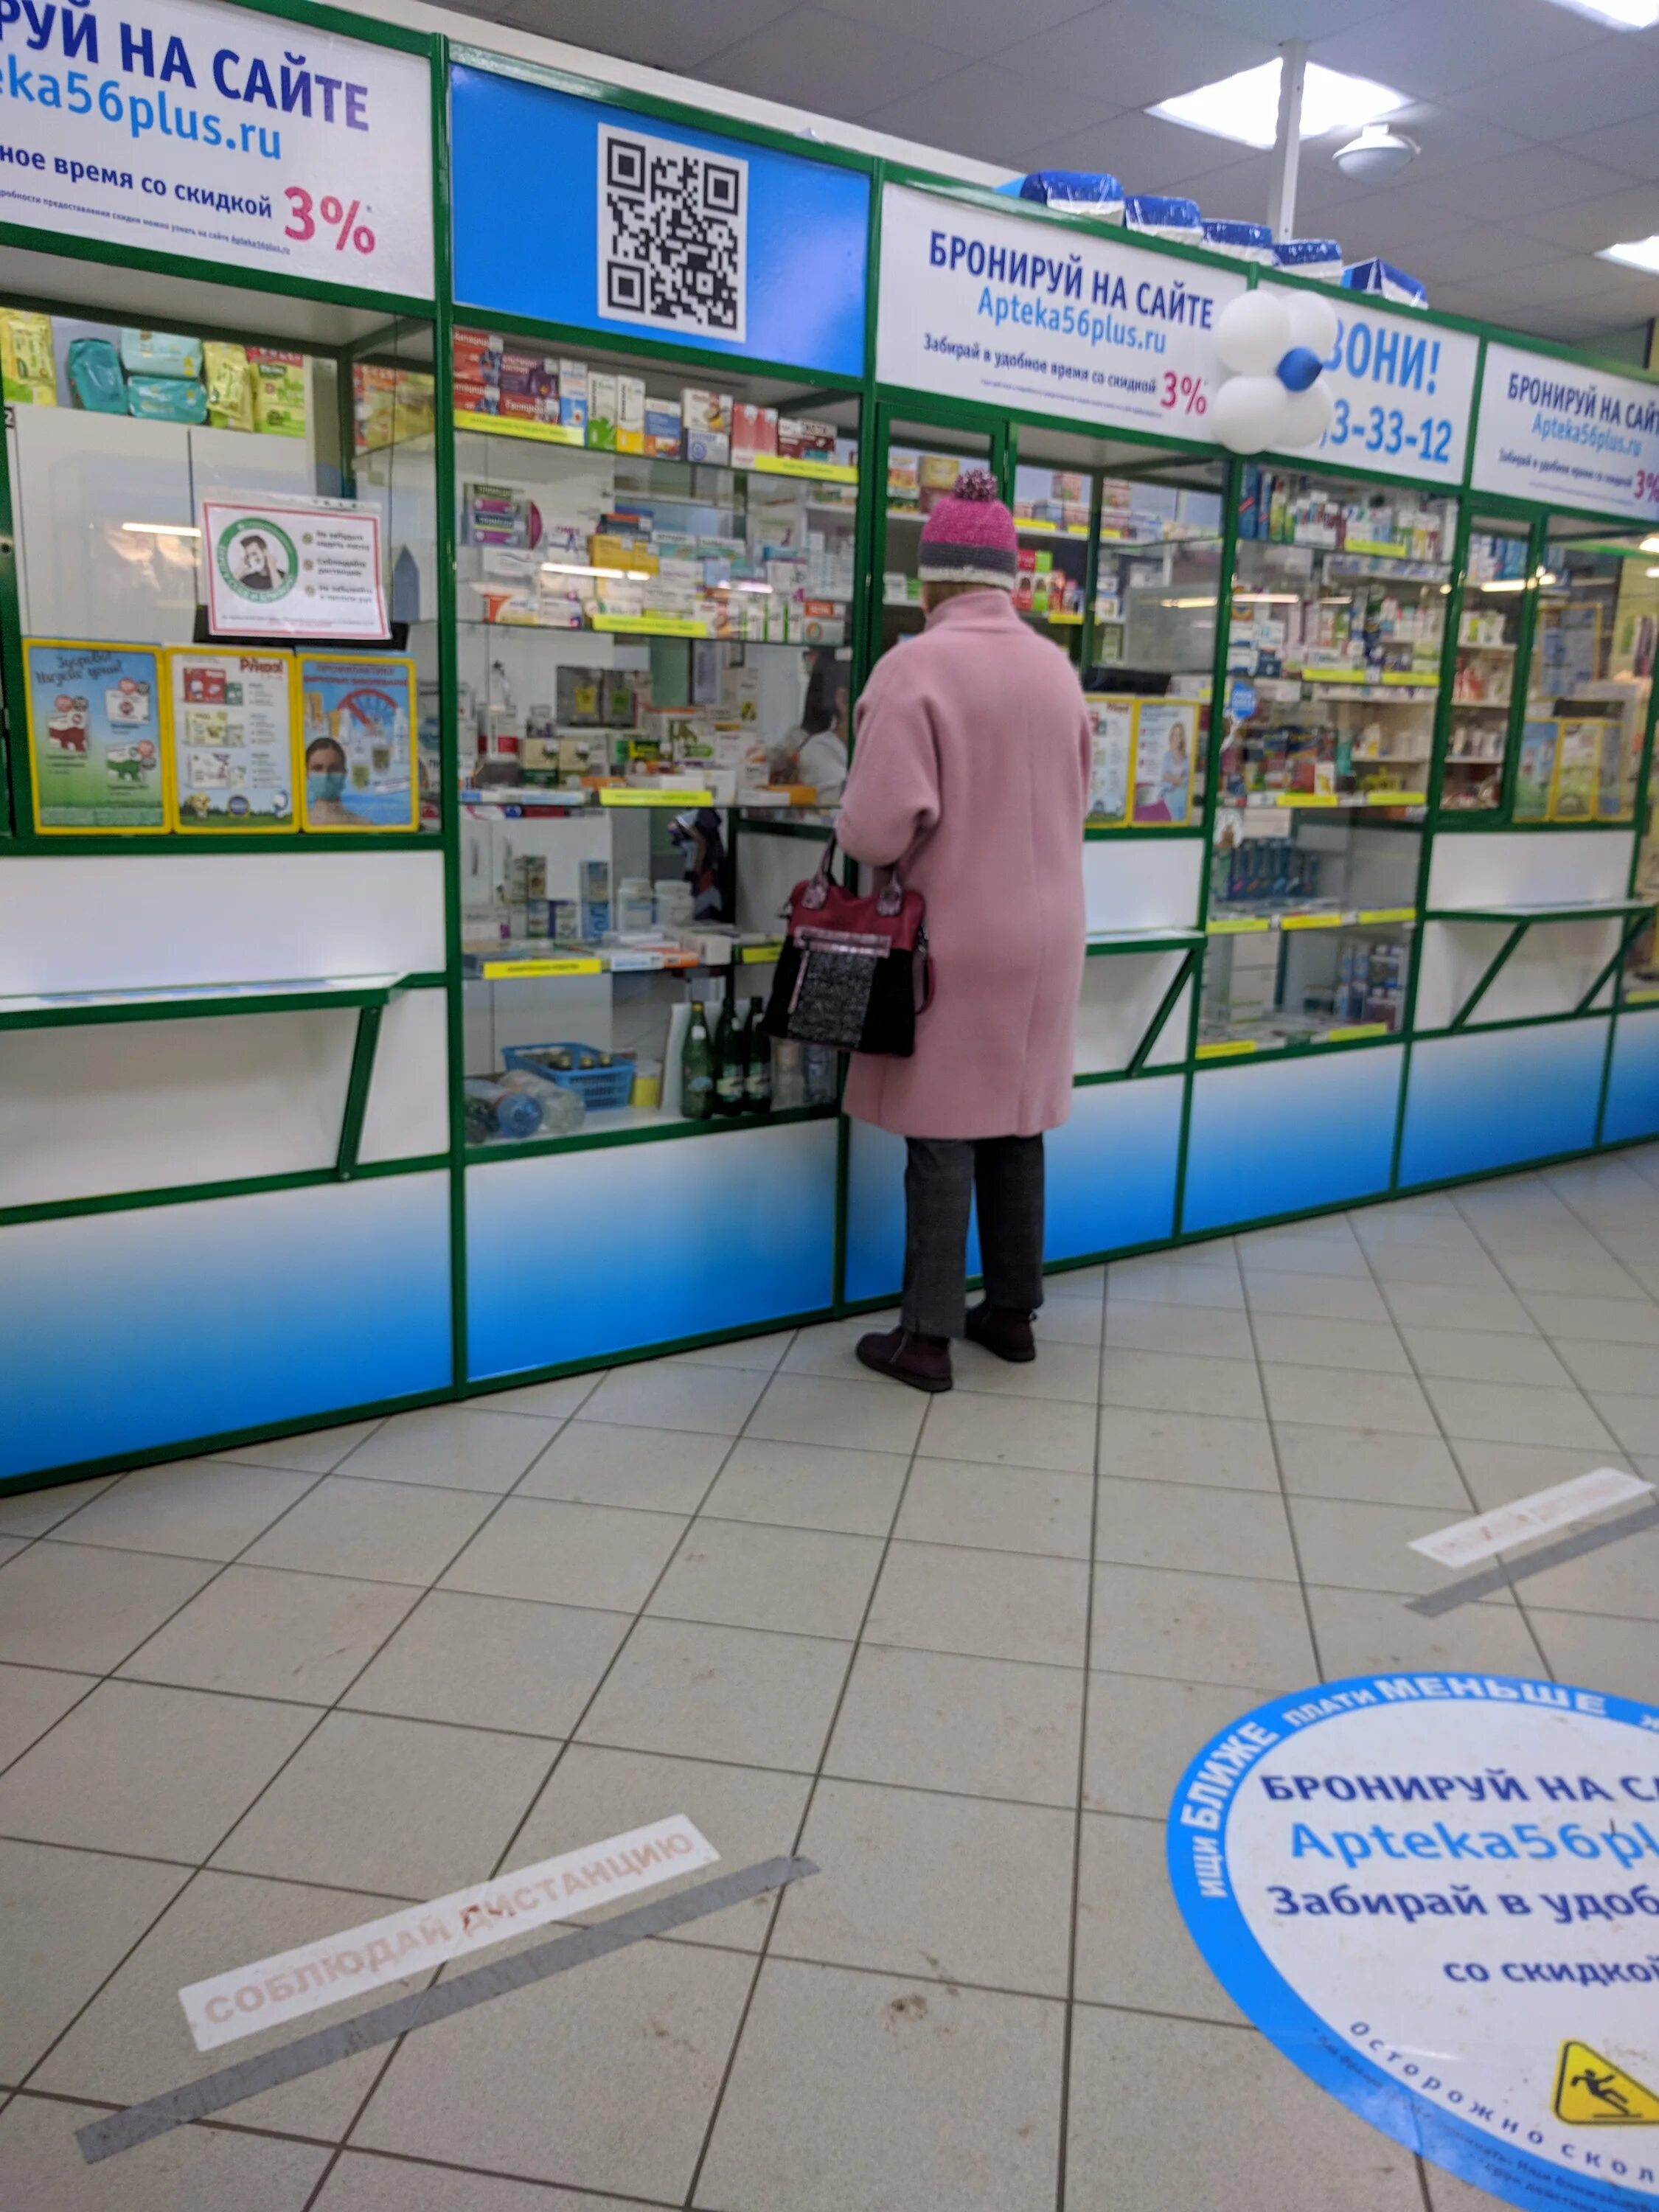 Аптеки в оренбурге телефоны